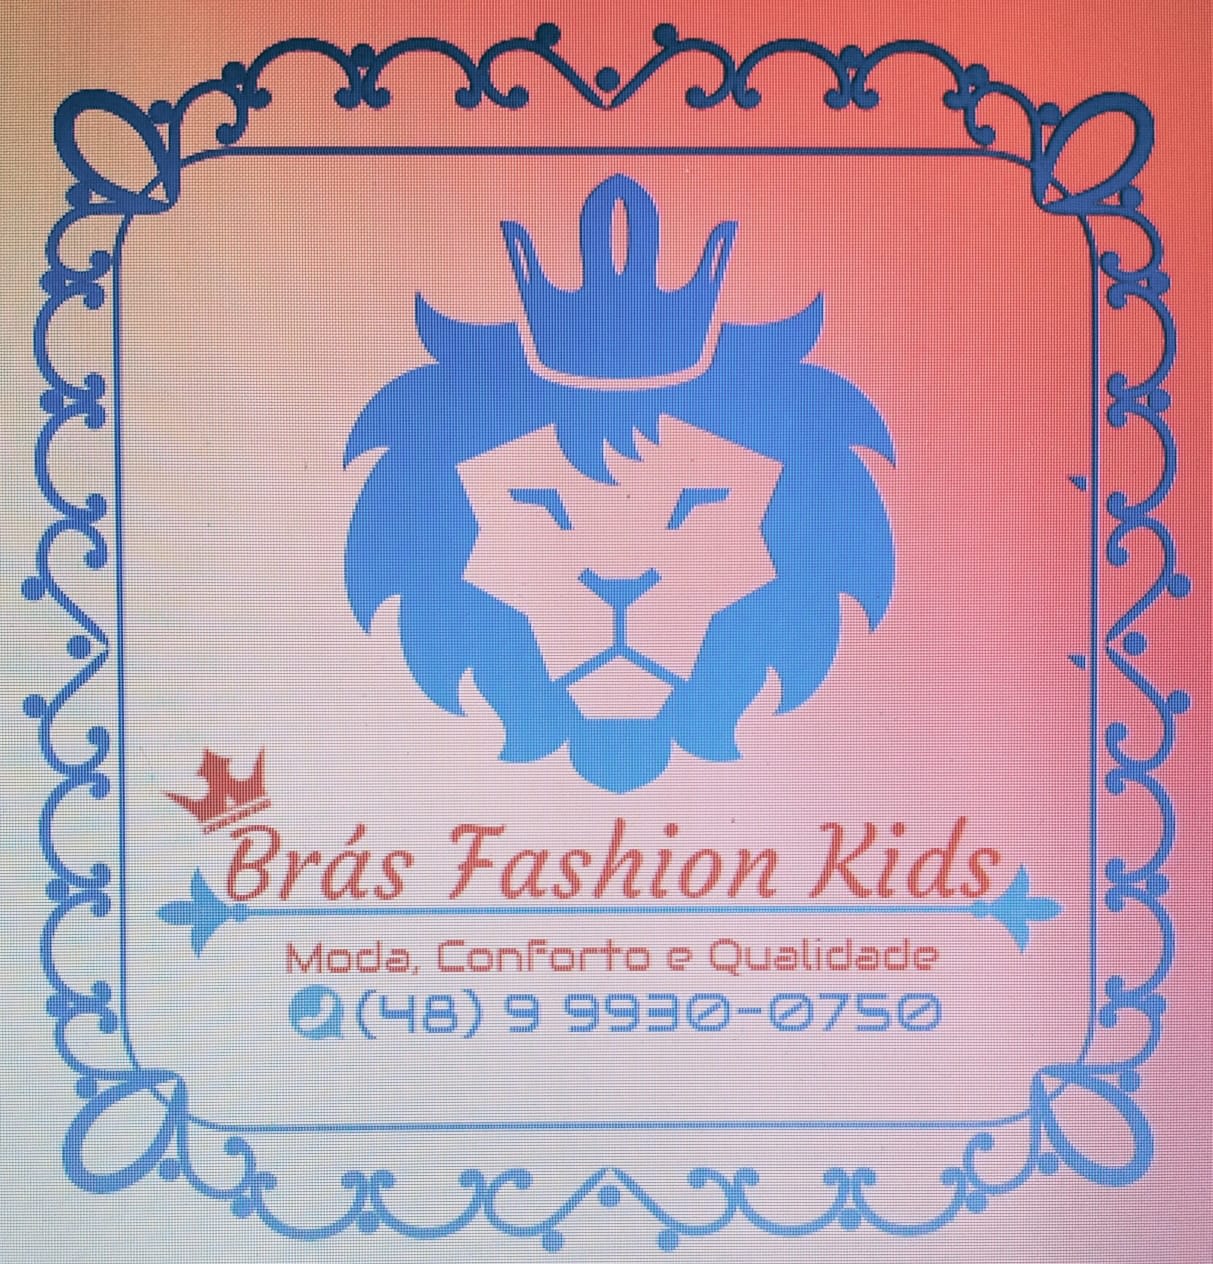 Brás Fashion Kids